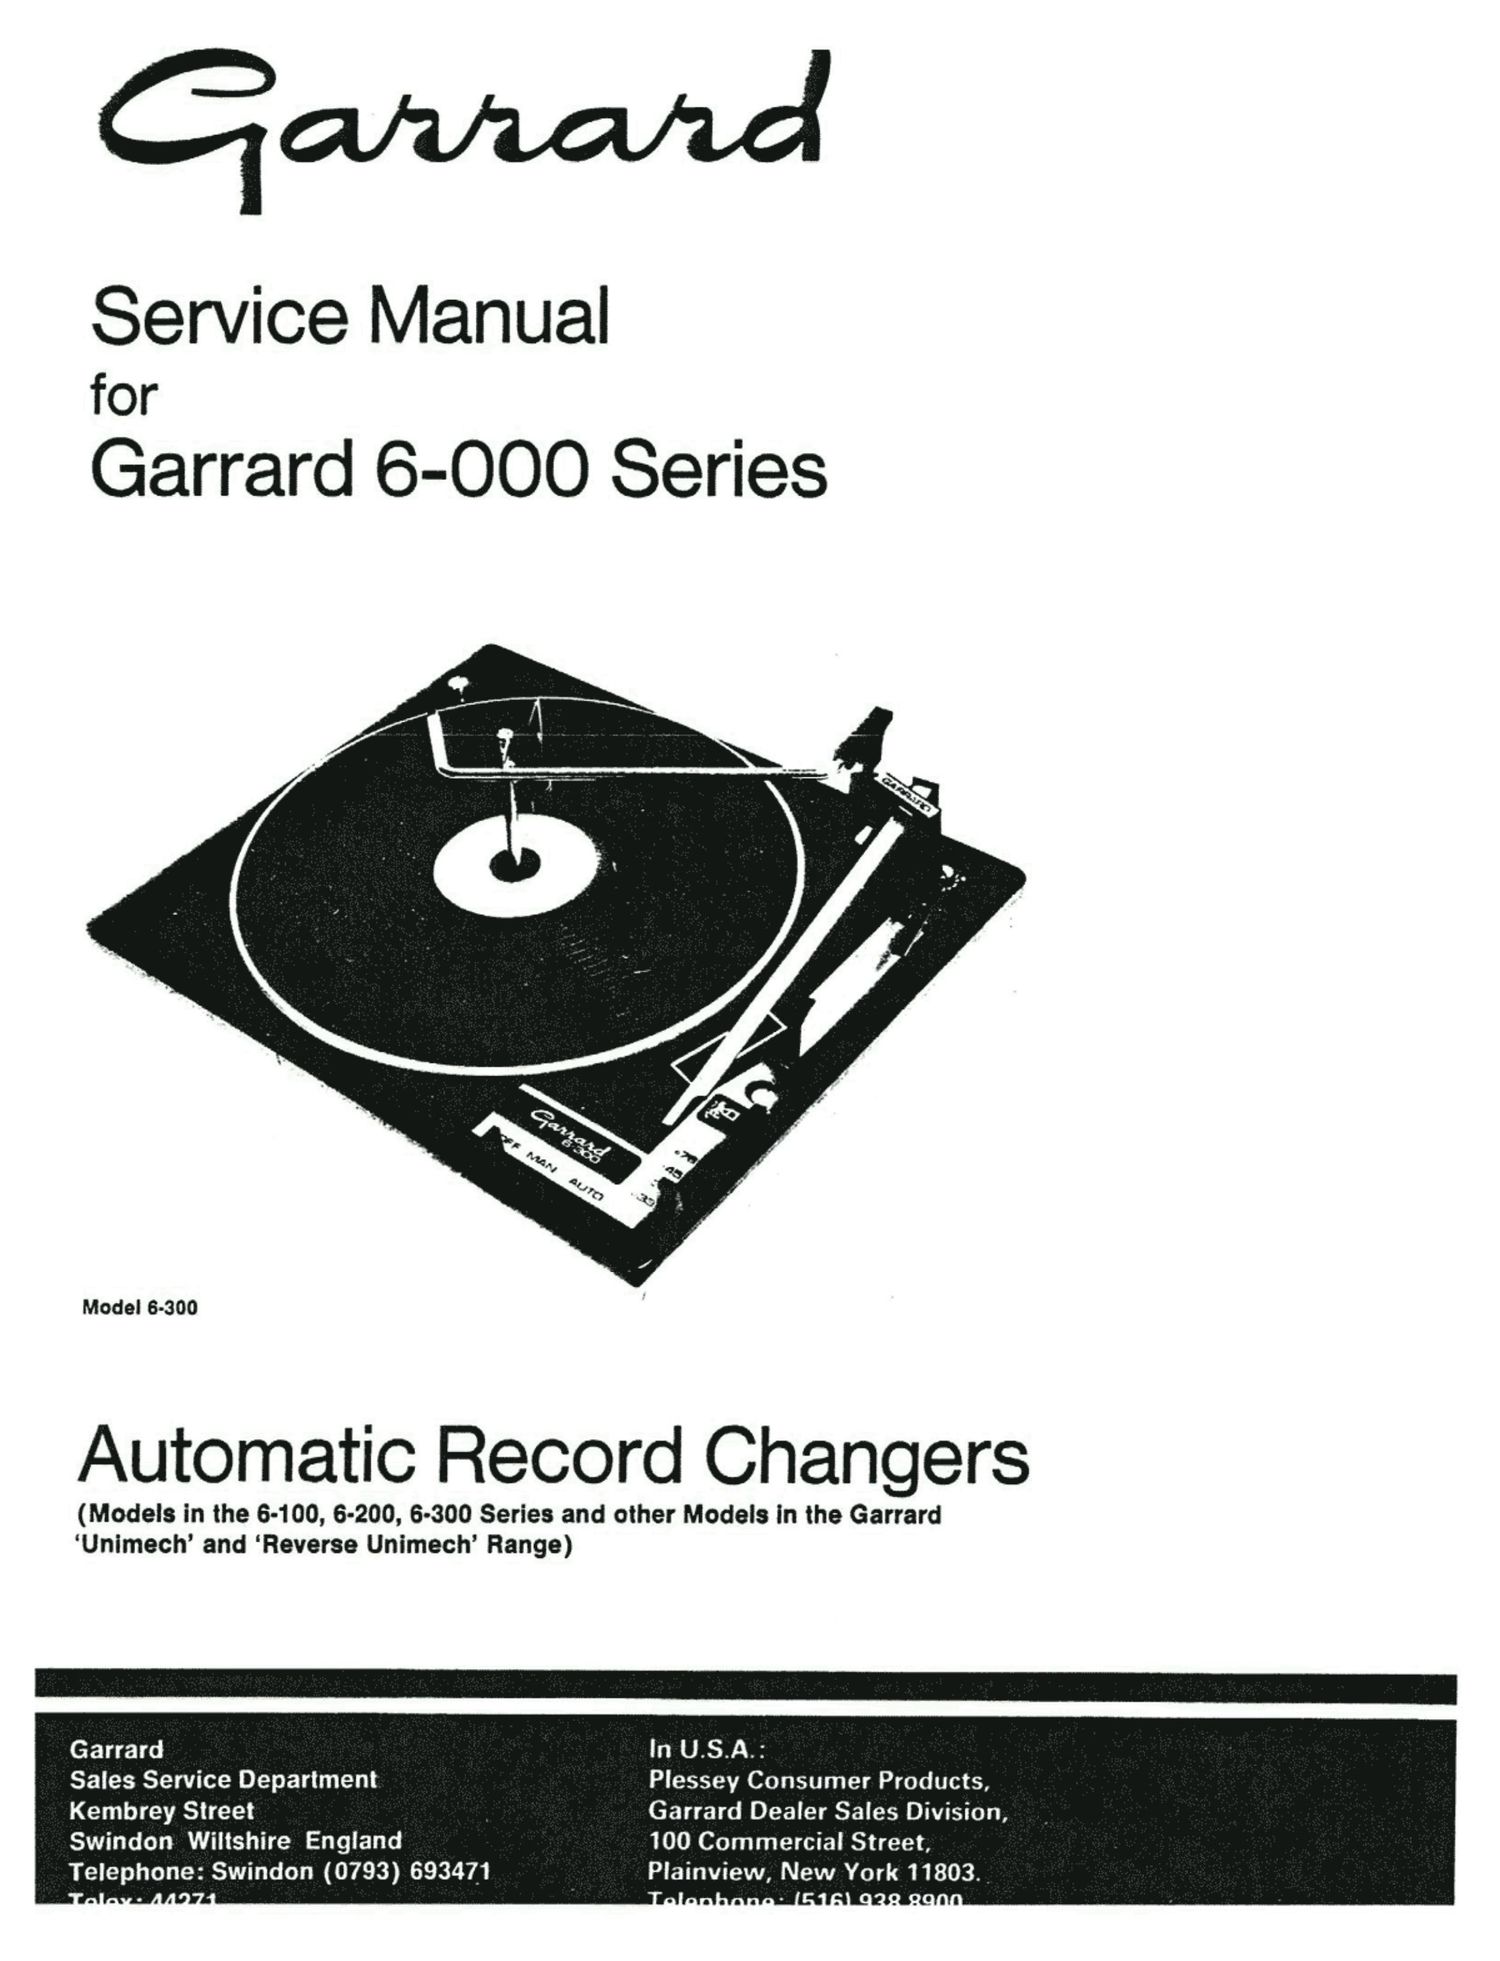 Garrard service manual  für 4 HF englisch Copy 